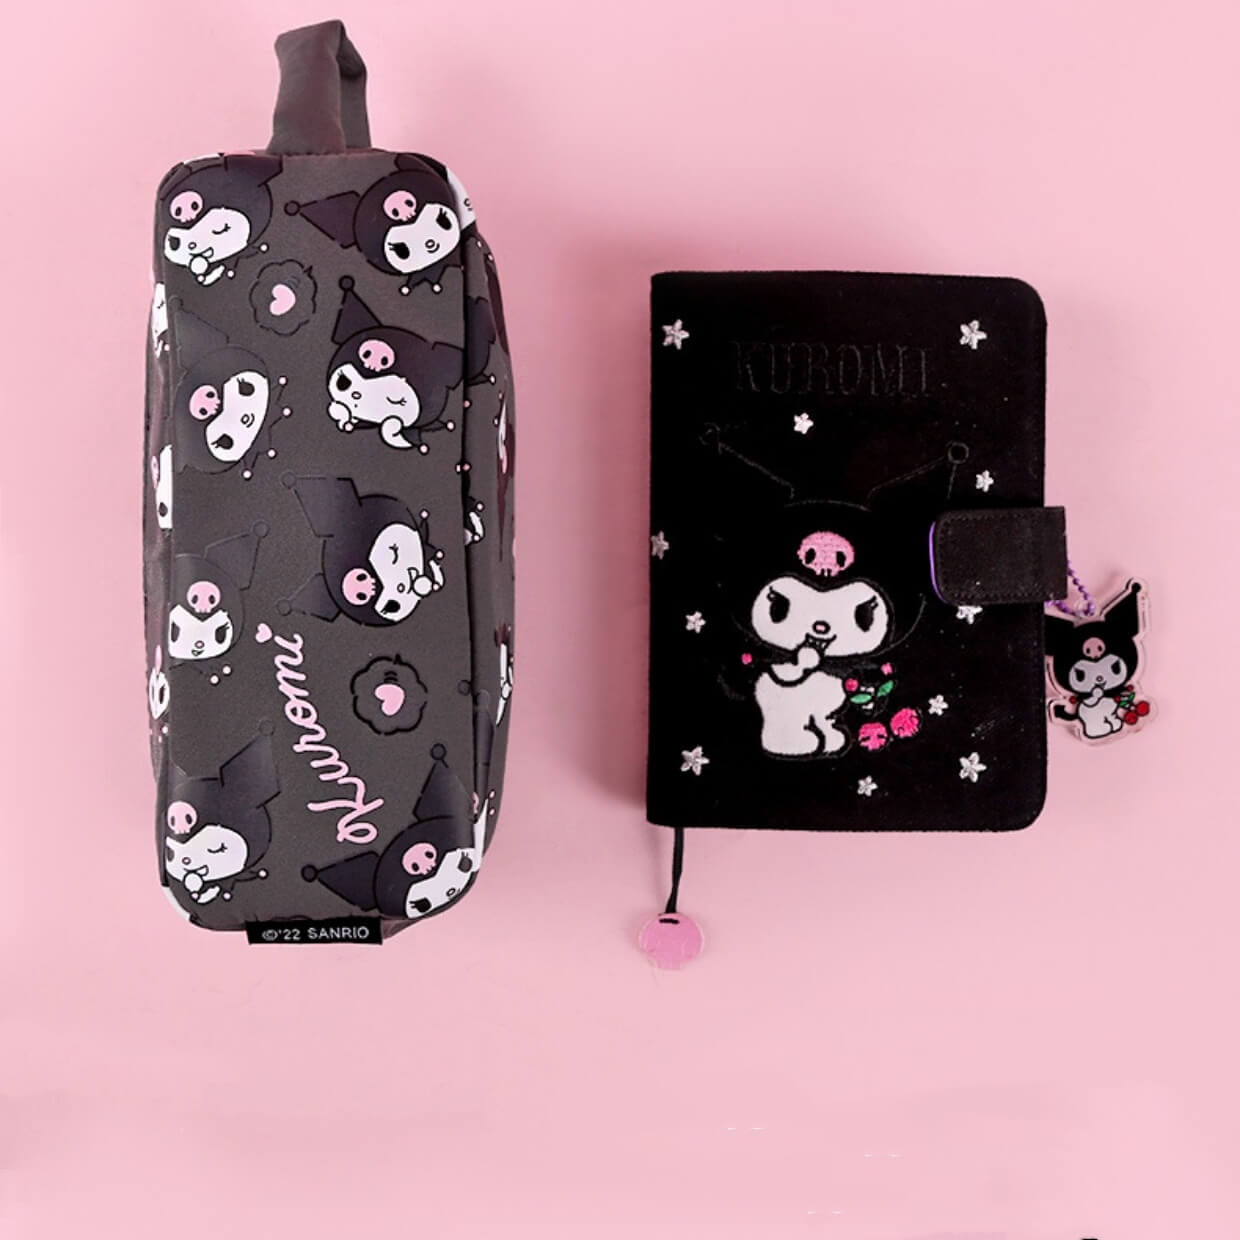 kuromi pencil bag and matching journal